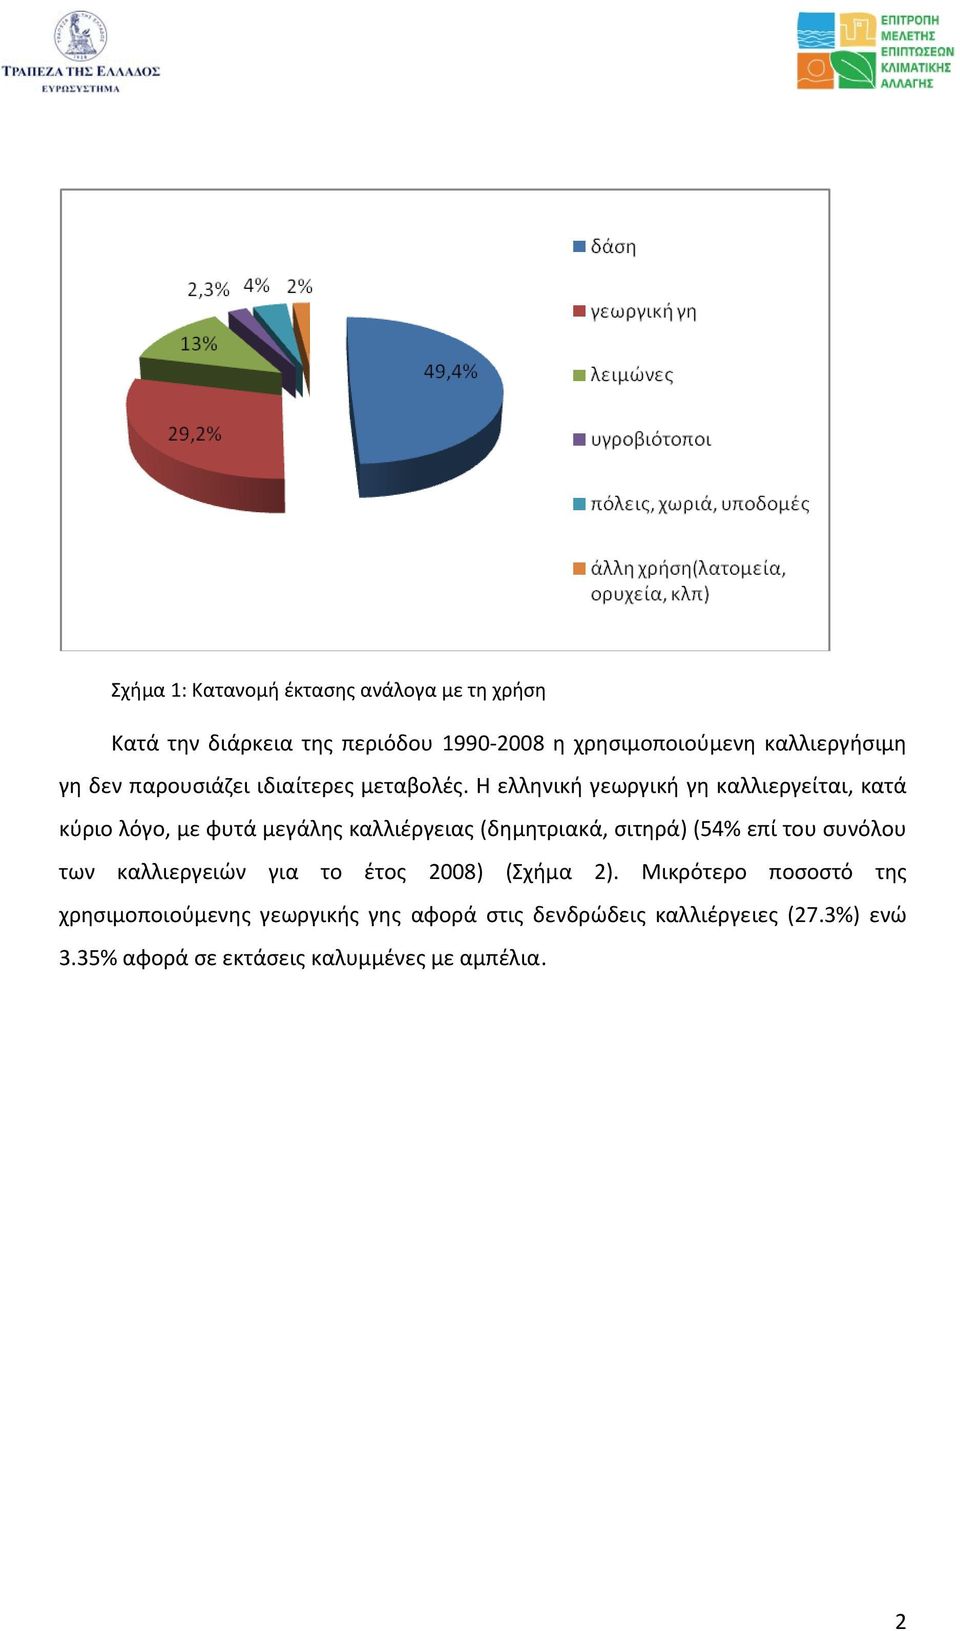 Η ελληνική γεωργική γη καλλιεργείται, κατά κύριο λόγο, με φυτά μεγάλης καλλιέργειας (δημητριακά, σιτηρά) (54% επί του